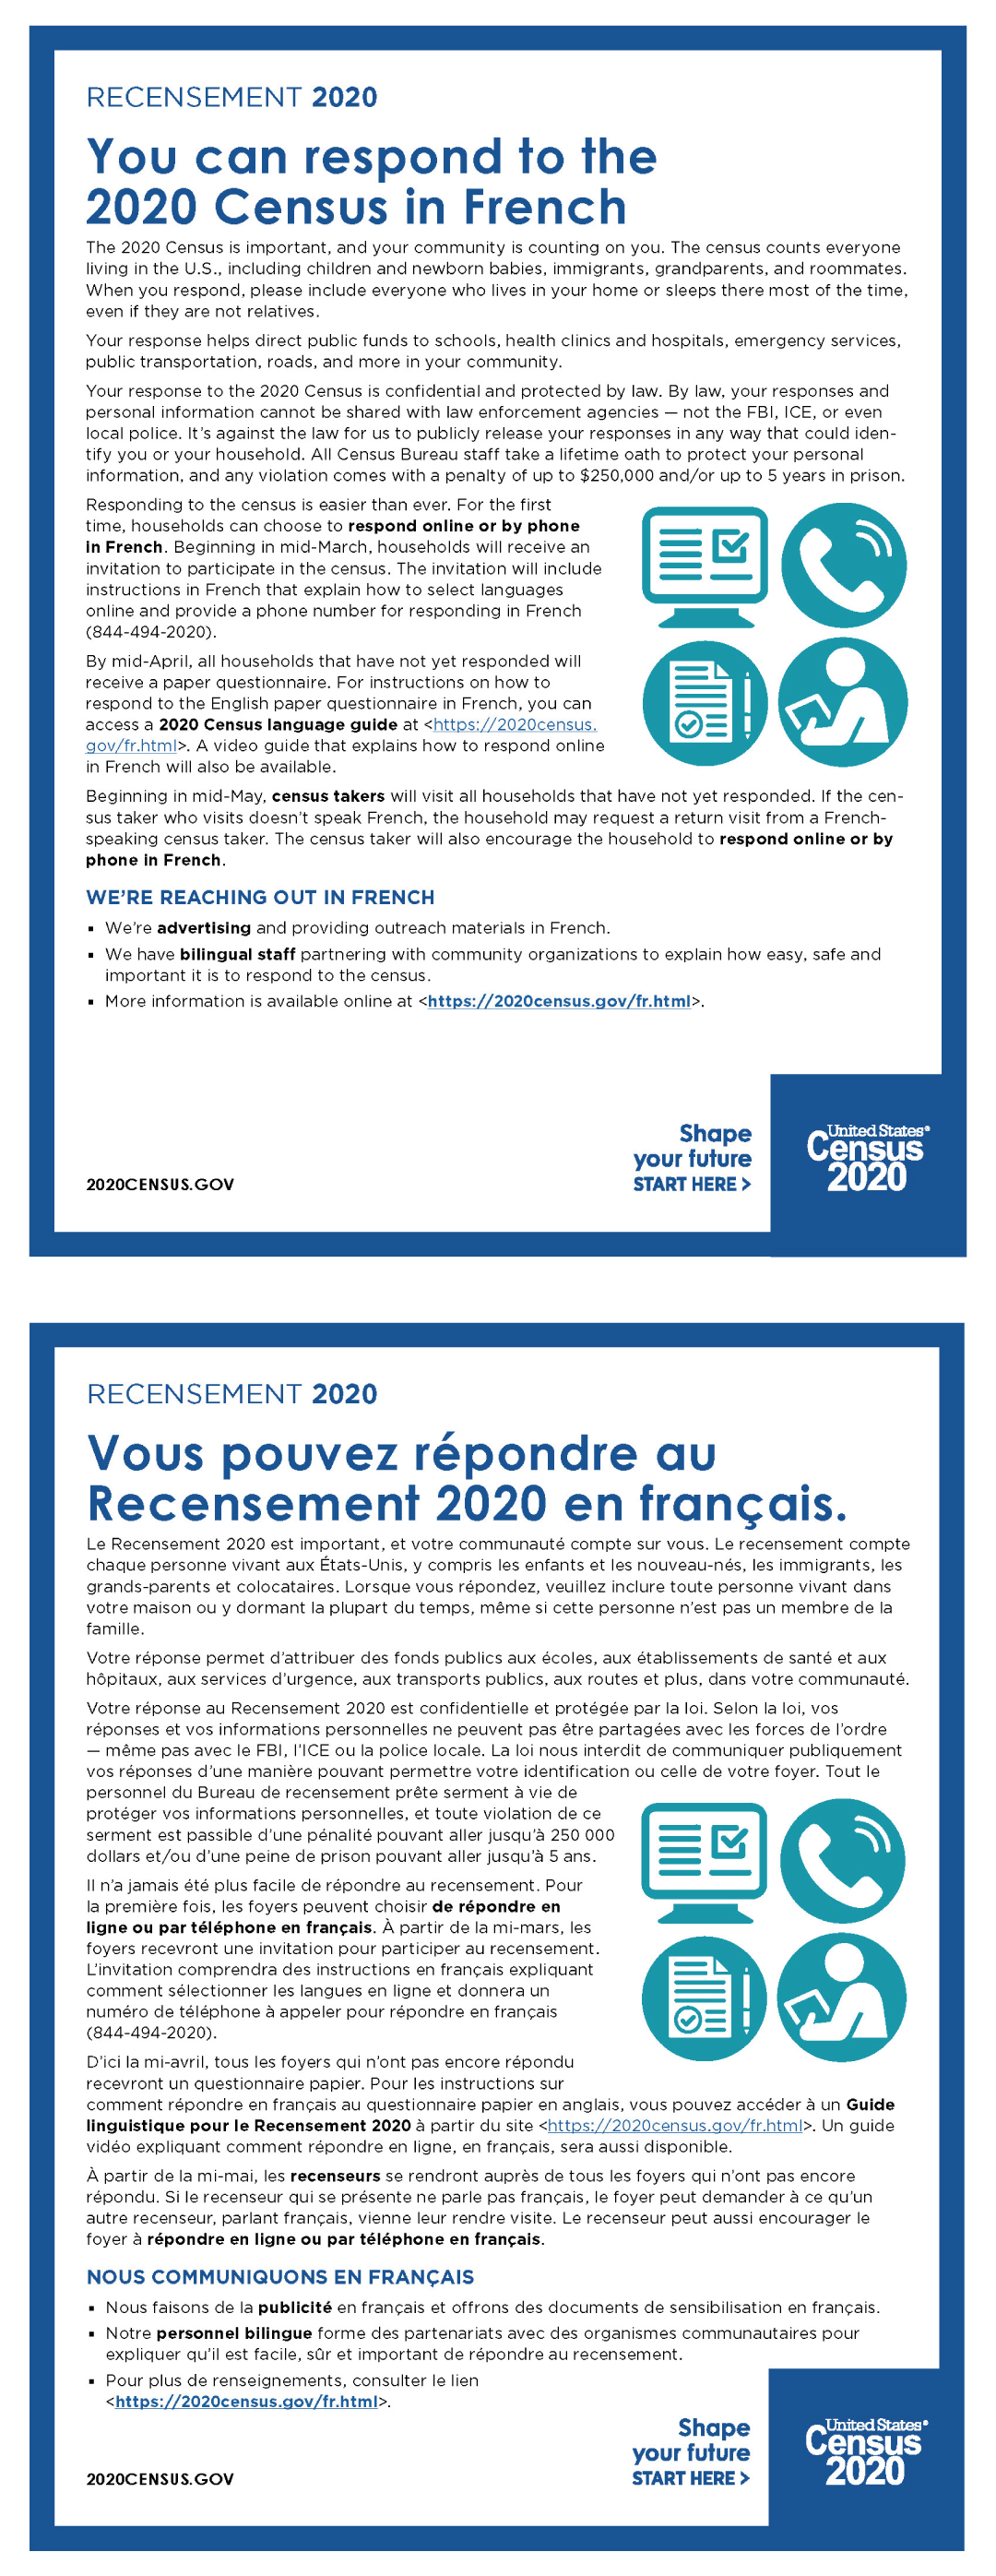 You can respond to the 2020 Census in French. (Vous pouvez répondre au Recensement 2020 en français.)